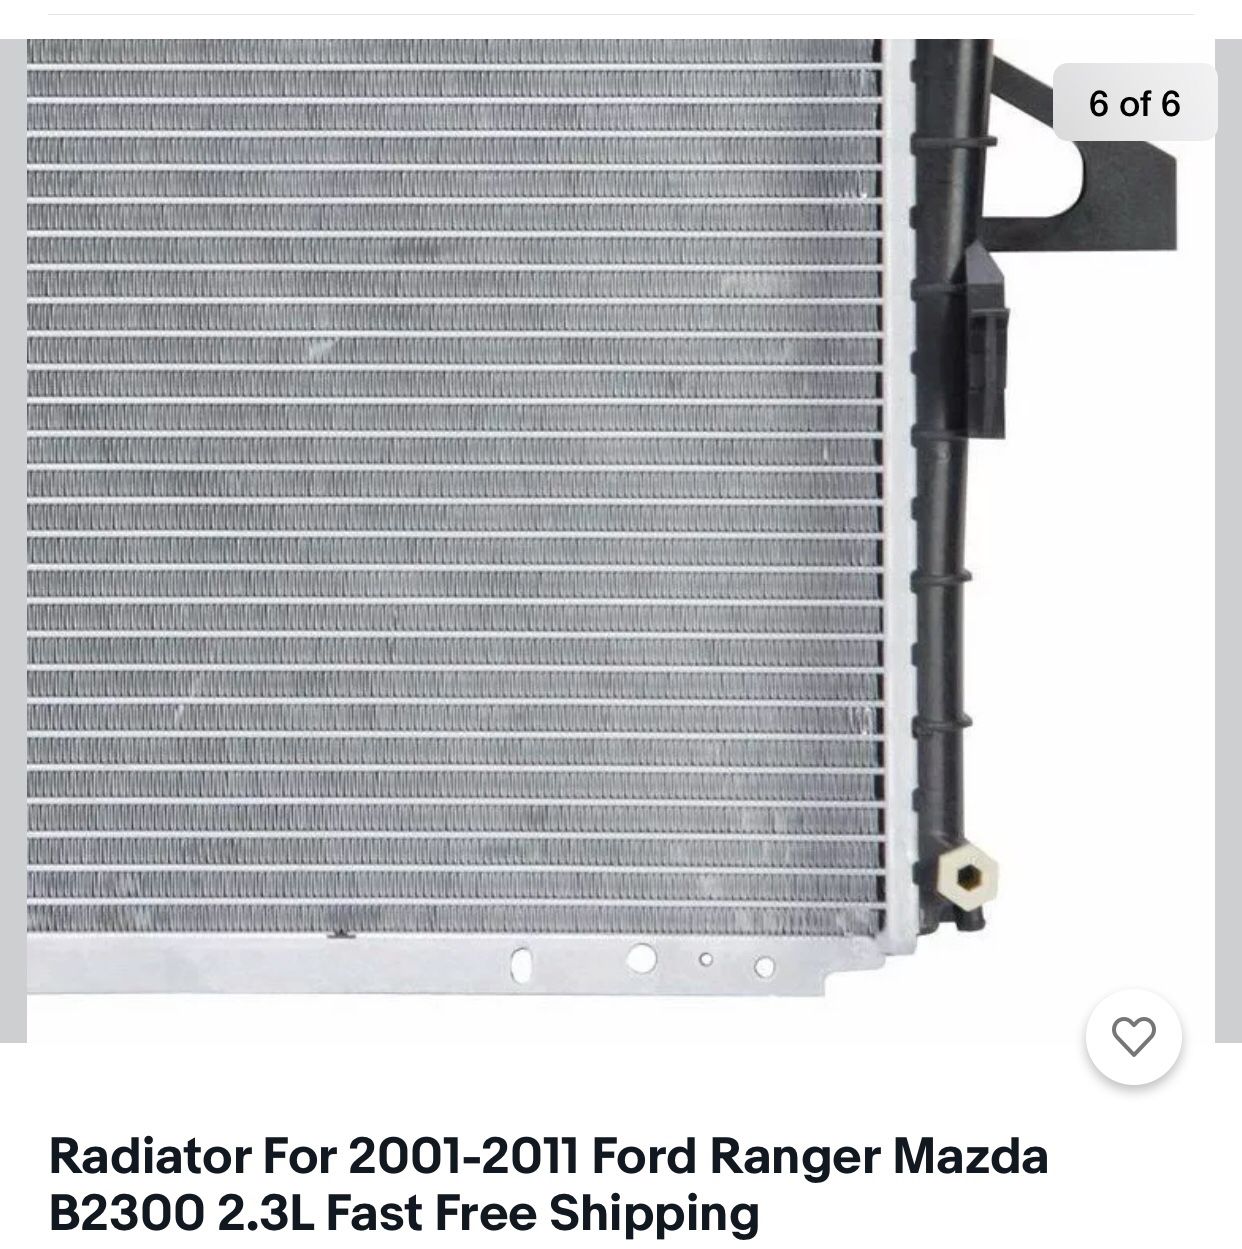 Ford Ranger 2001-2011 Radiator Mazda B2300 2.3L